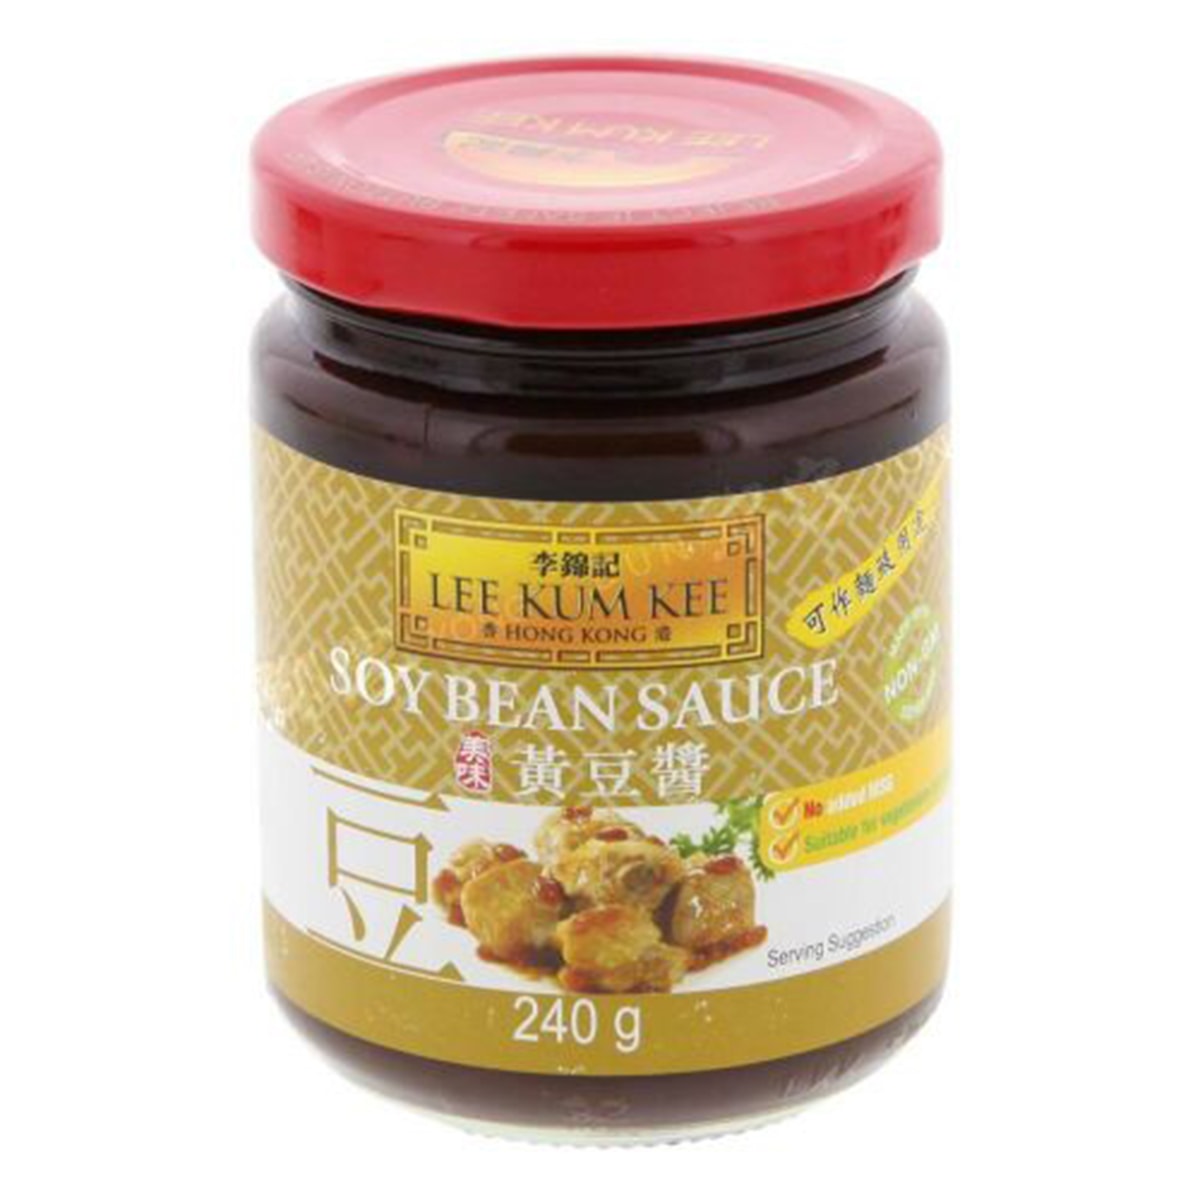 Buy Lee Kum Kee Soy Bean Sauce - 240 gm